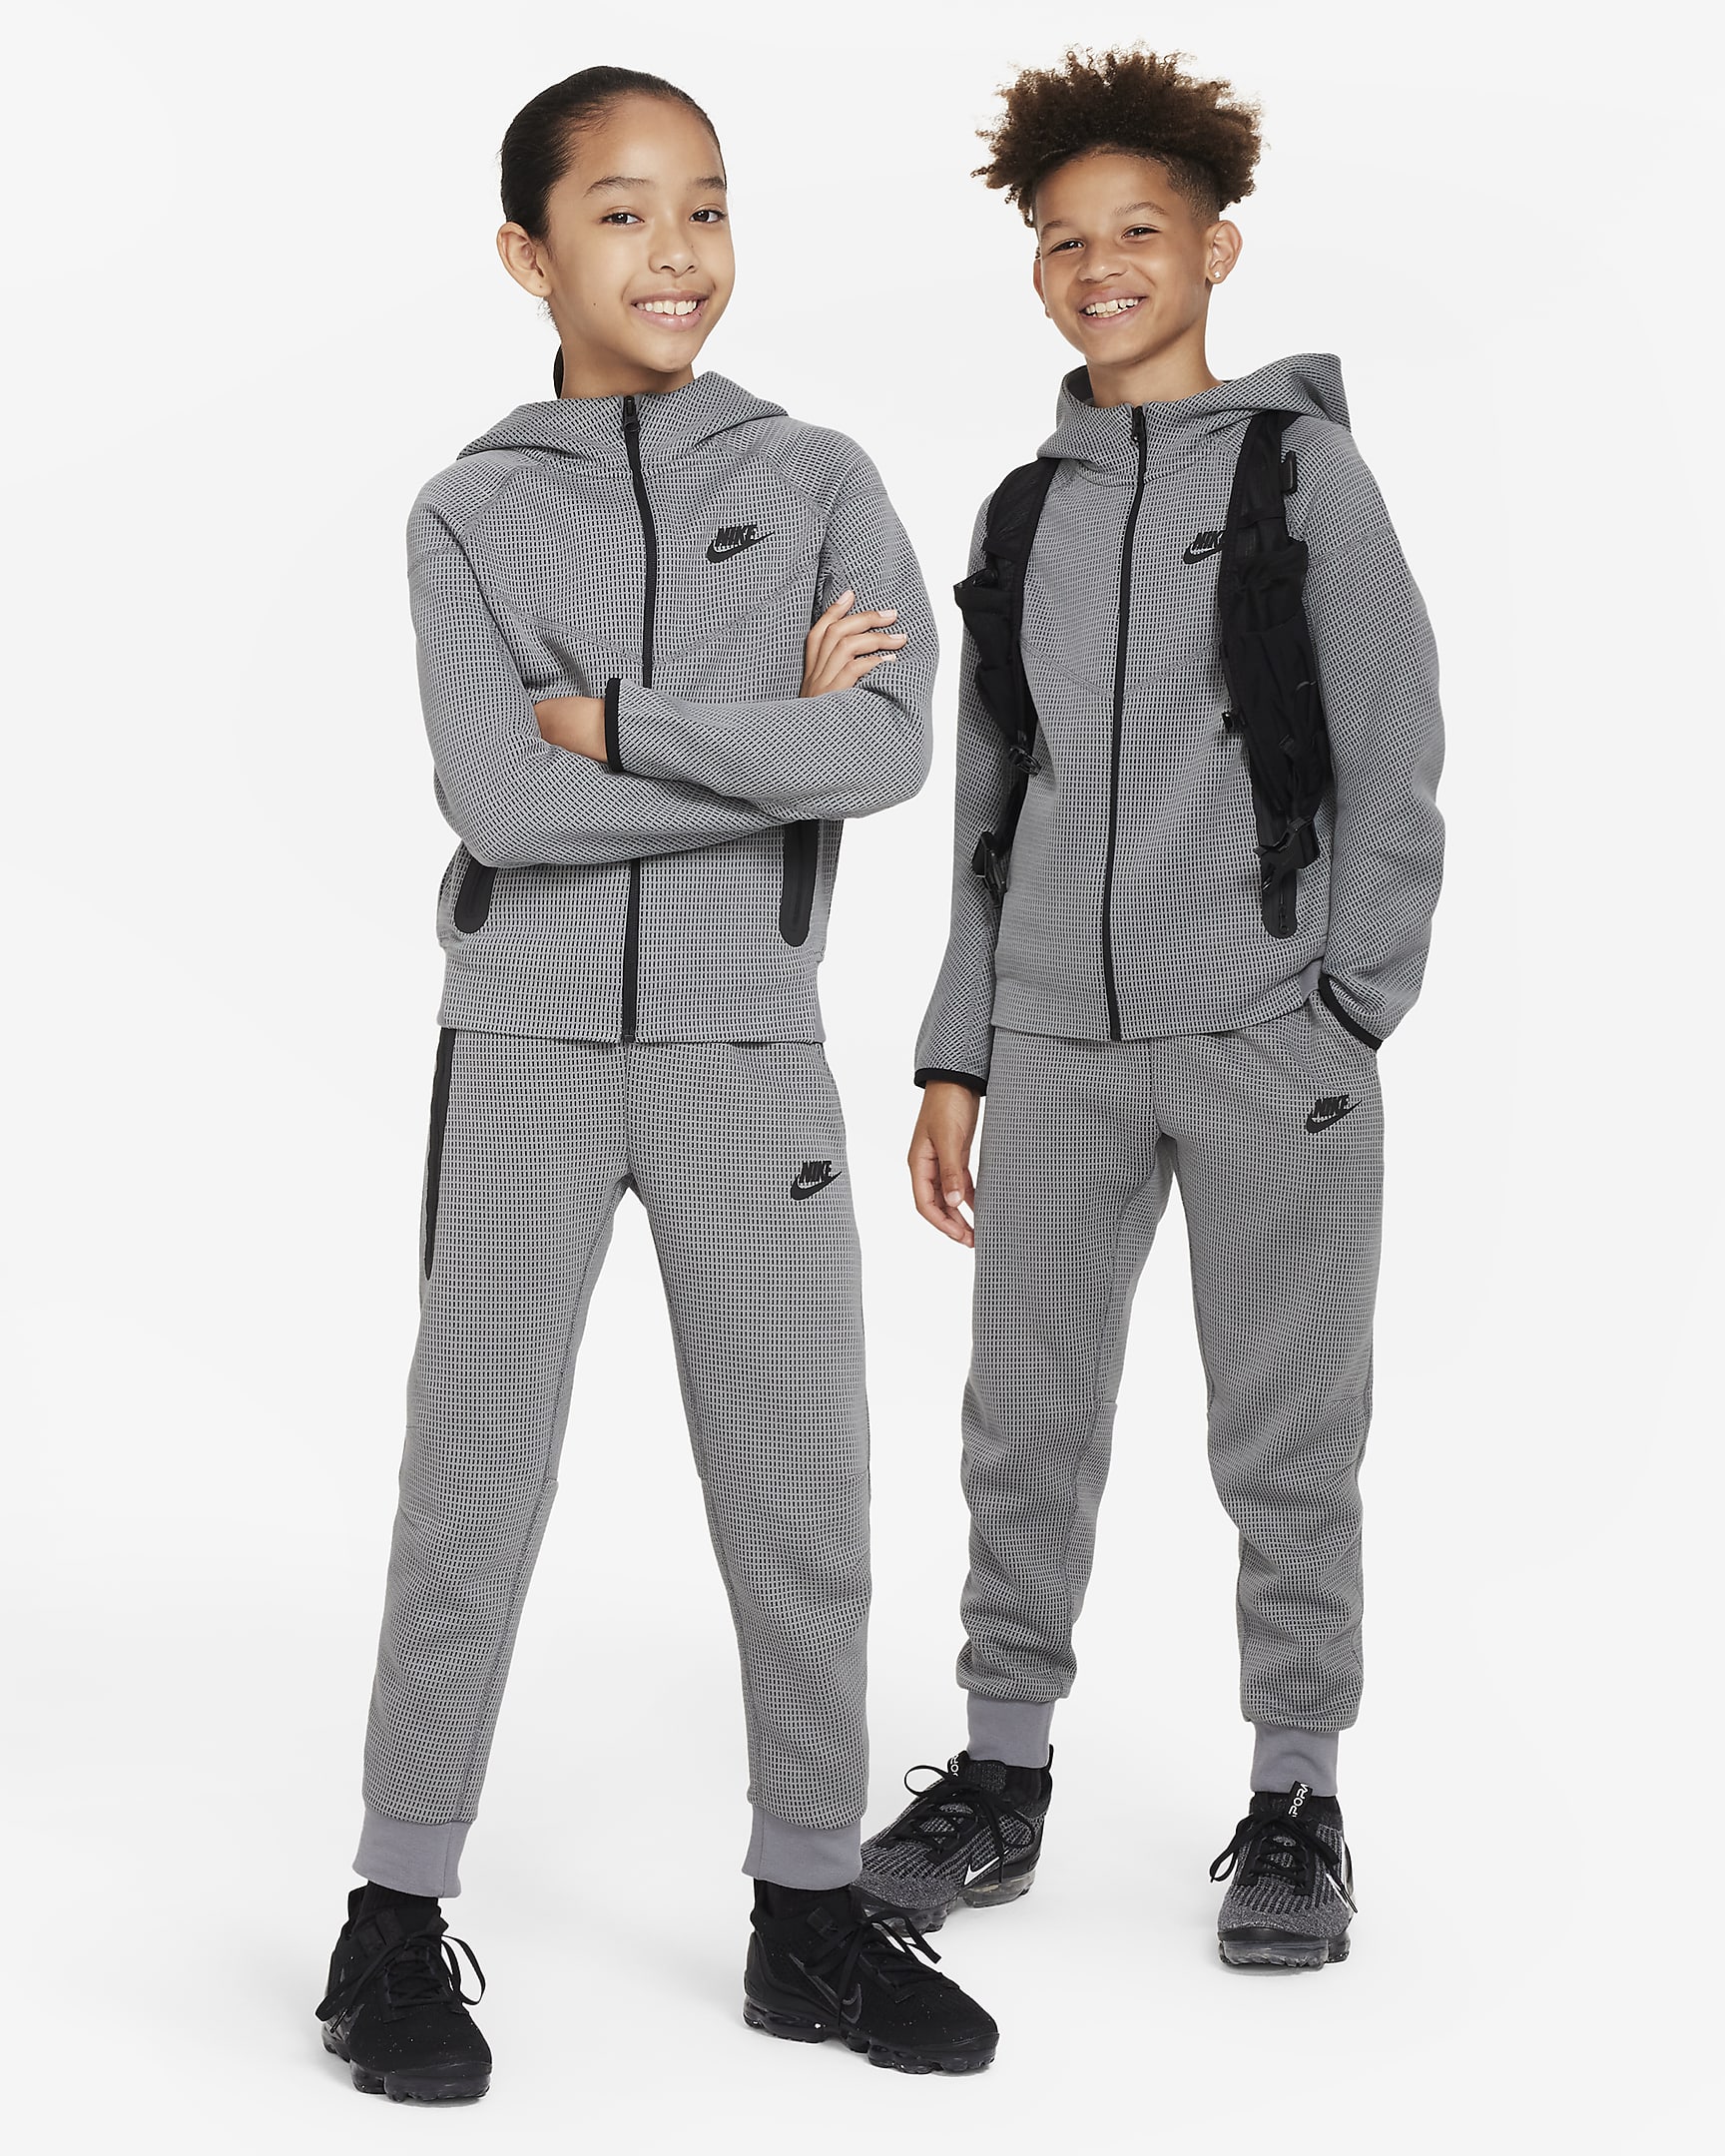 Nike Sportswear Tech Fleece Older Kids' (Boys') Winterized Trousers ...